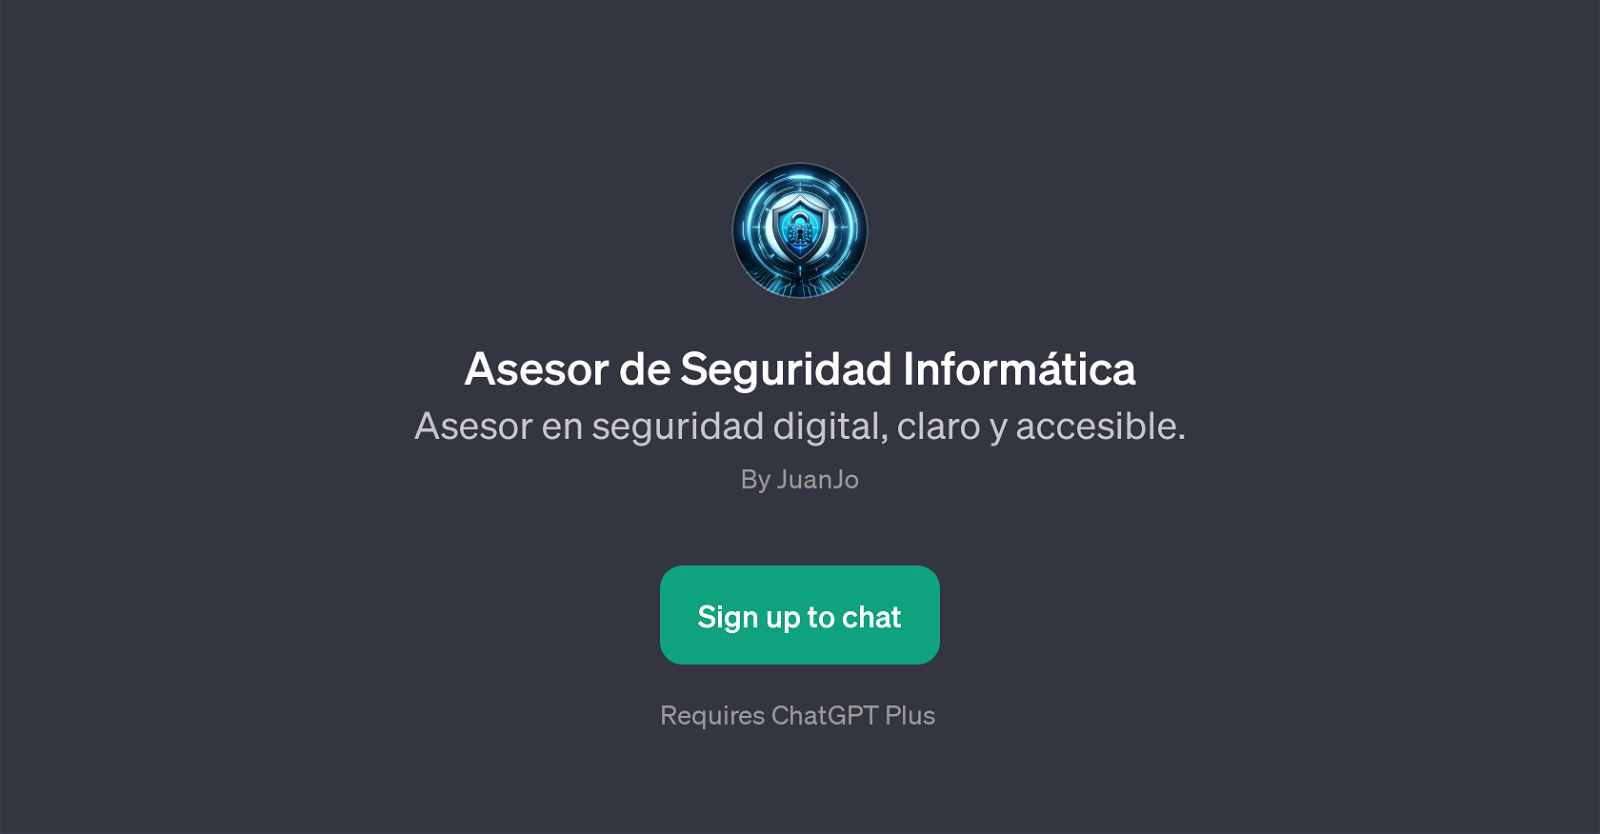 Asesor de Seguridad Informtica website